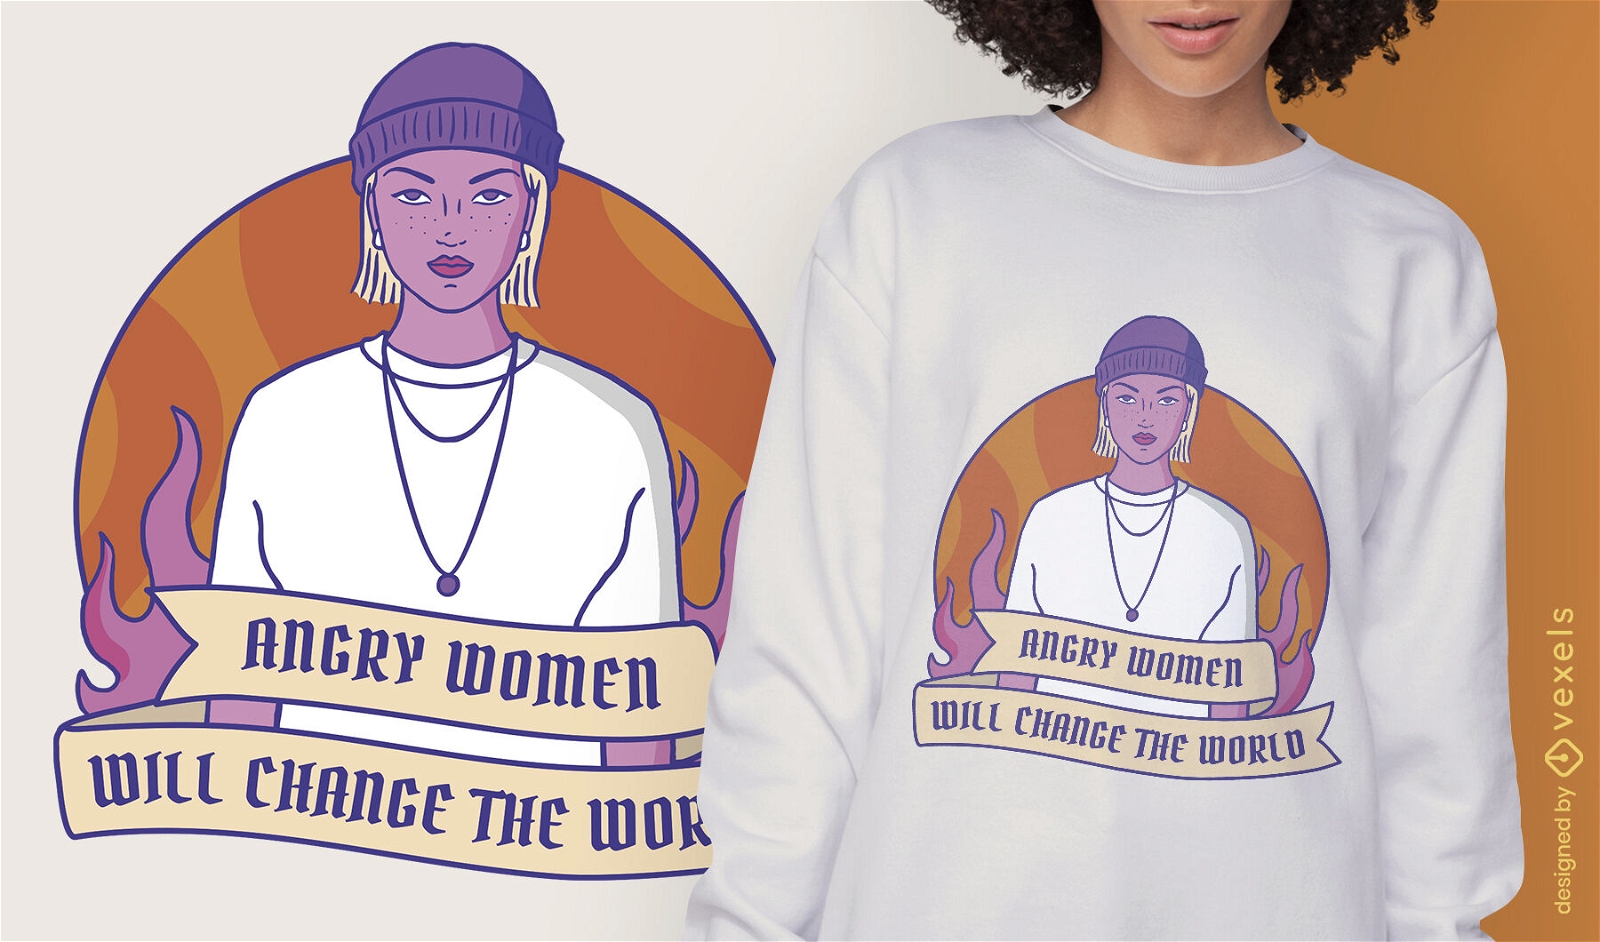 Feminist strong woman t-shirt design